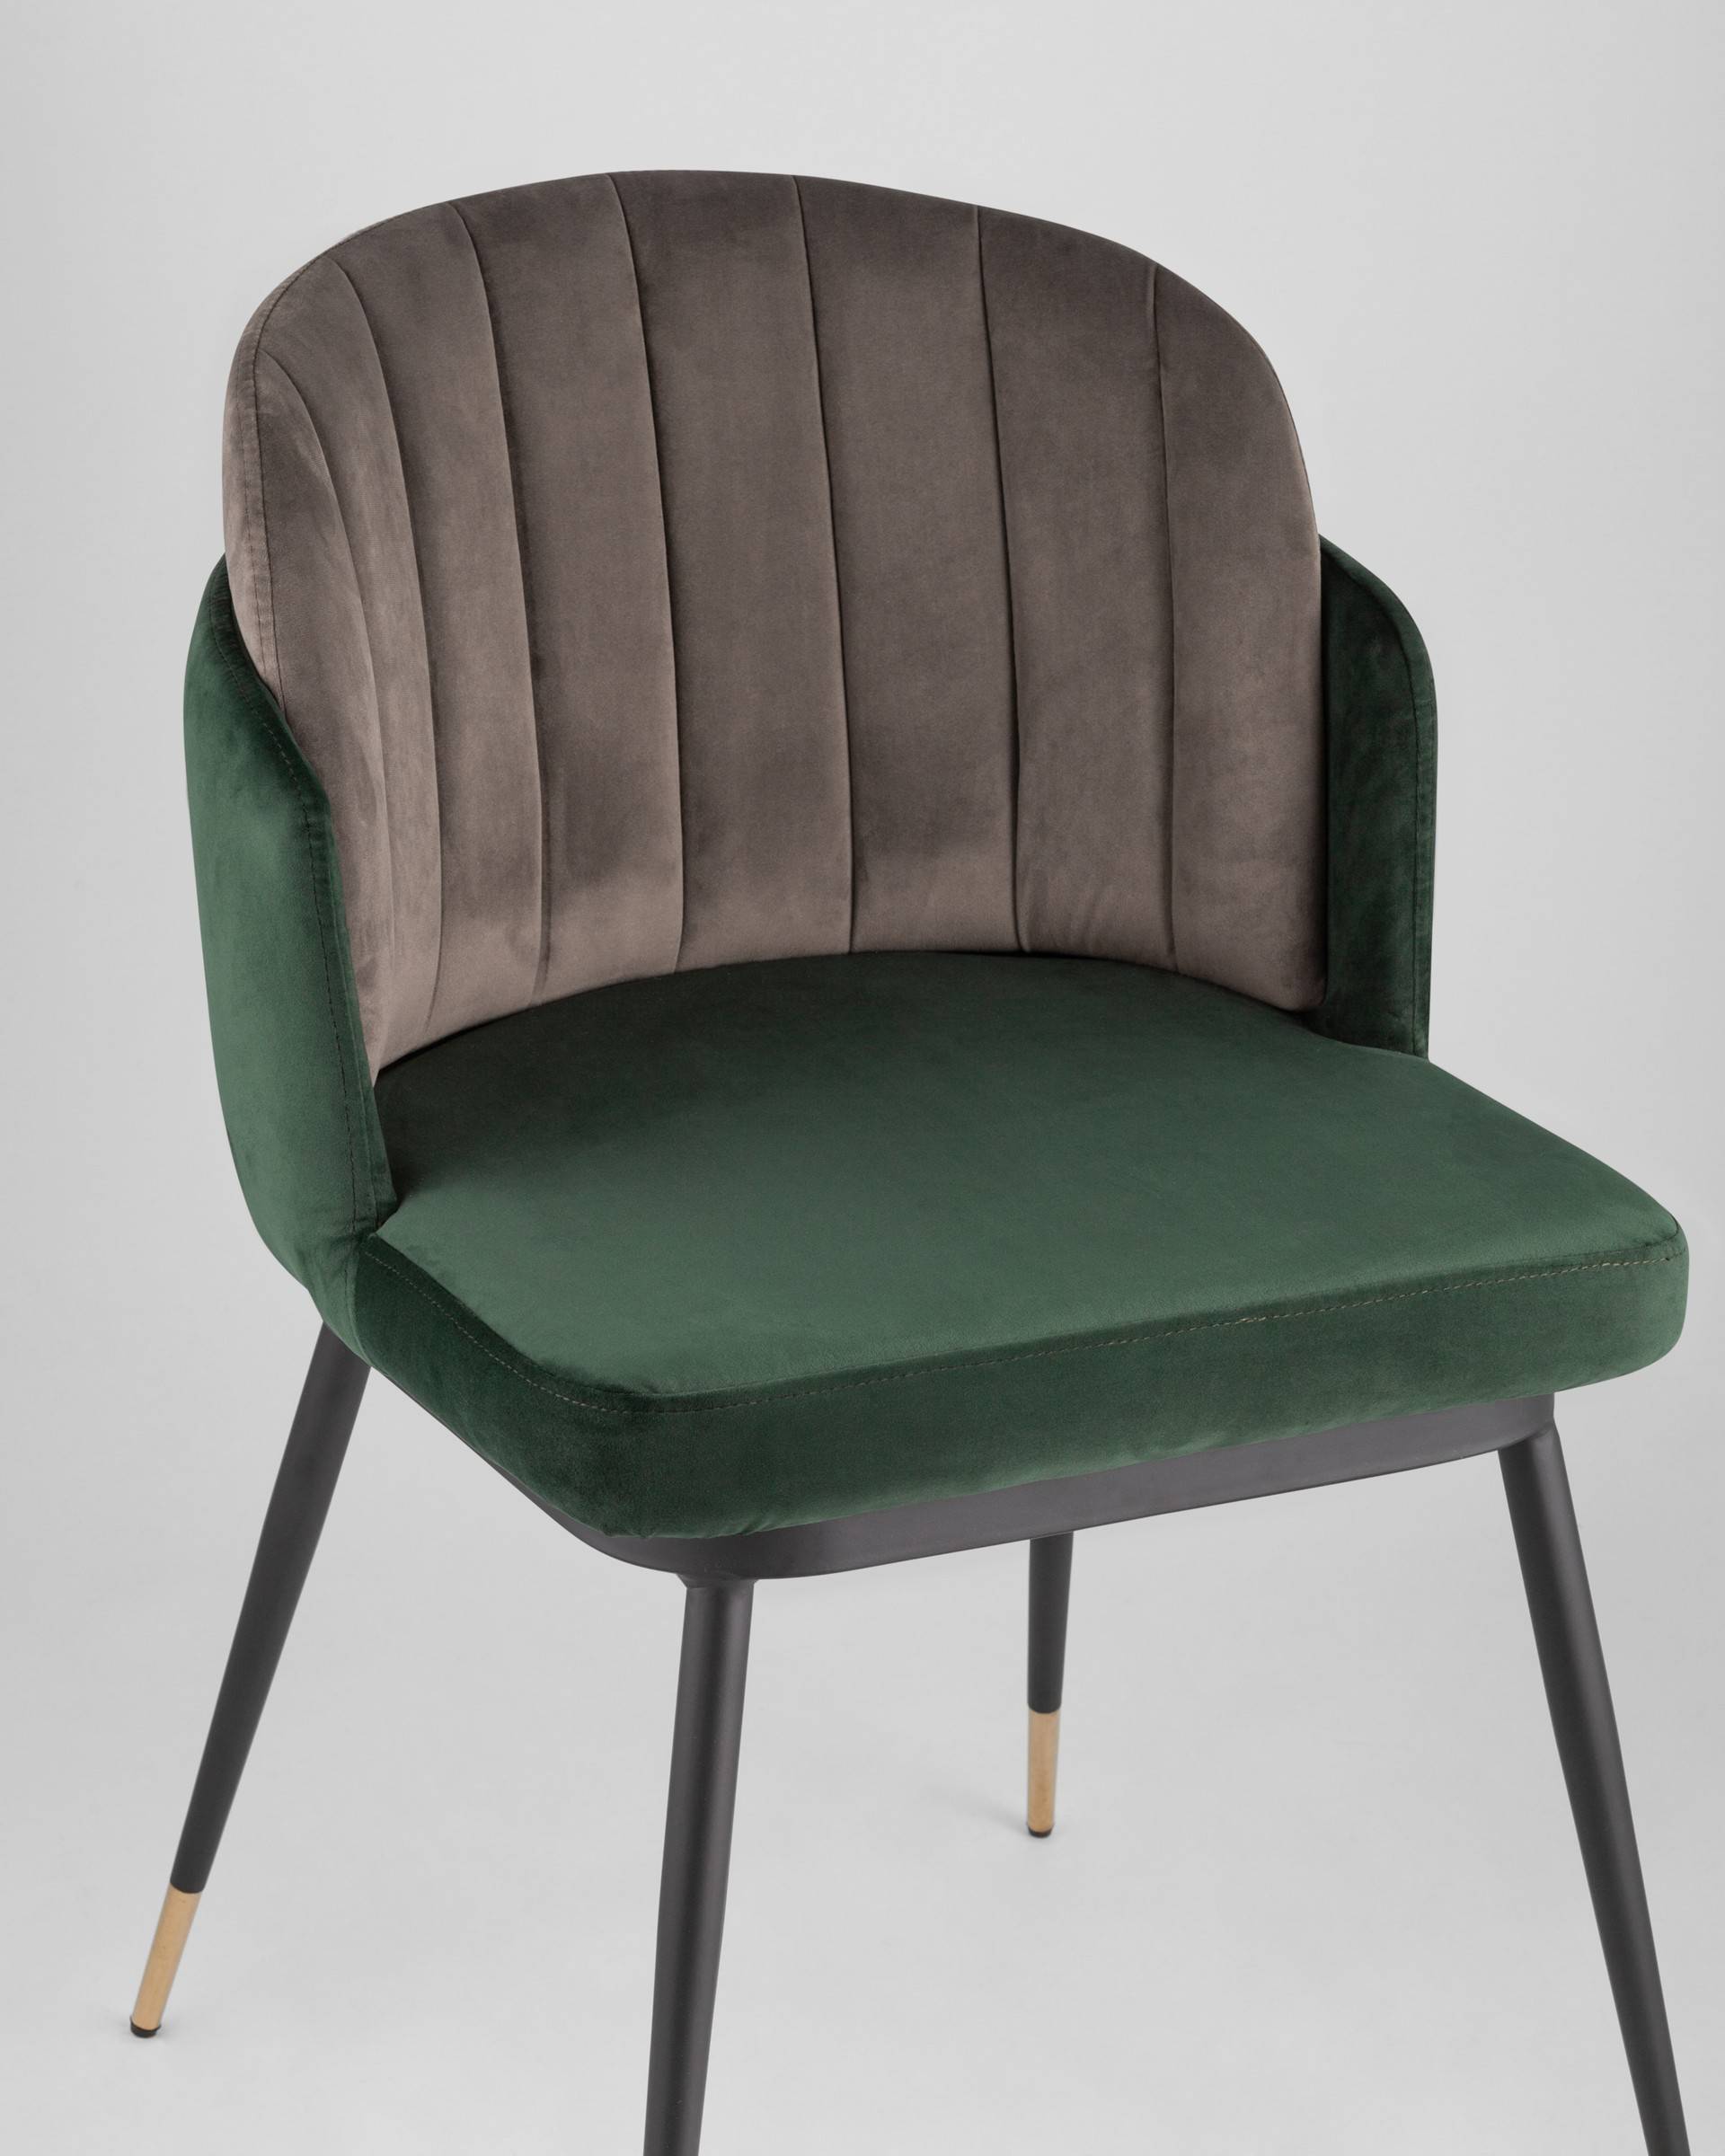 Нан 1 зеленый стул